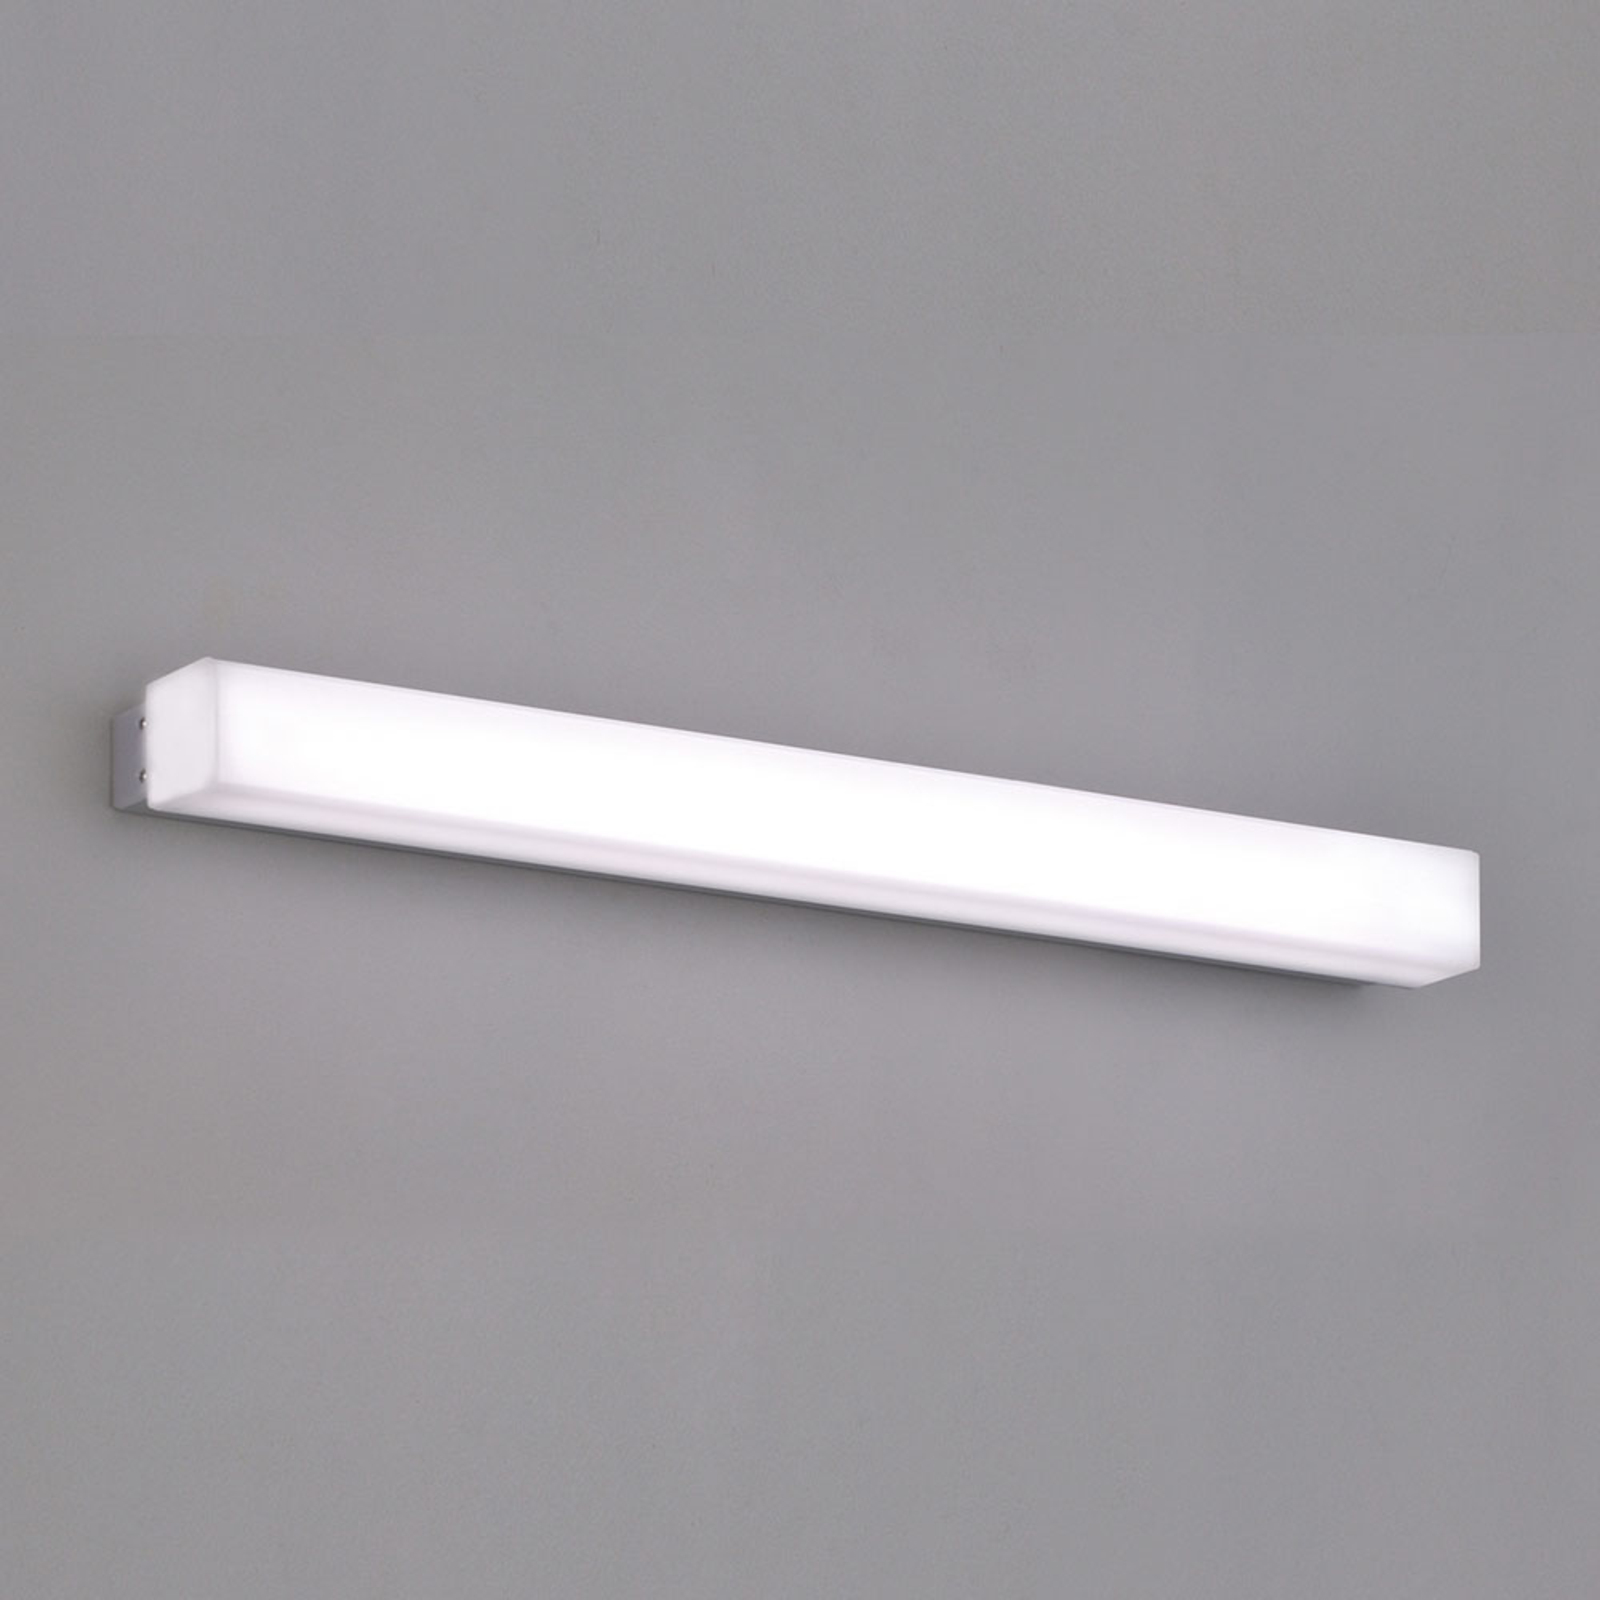 Kinkiet LED do łazienki Box, 3 000 K, 59 cm